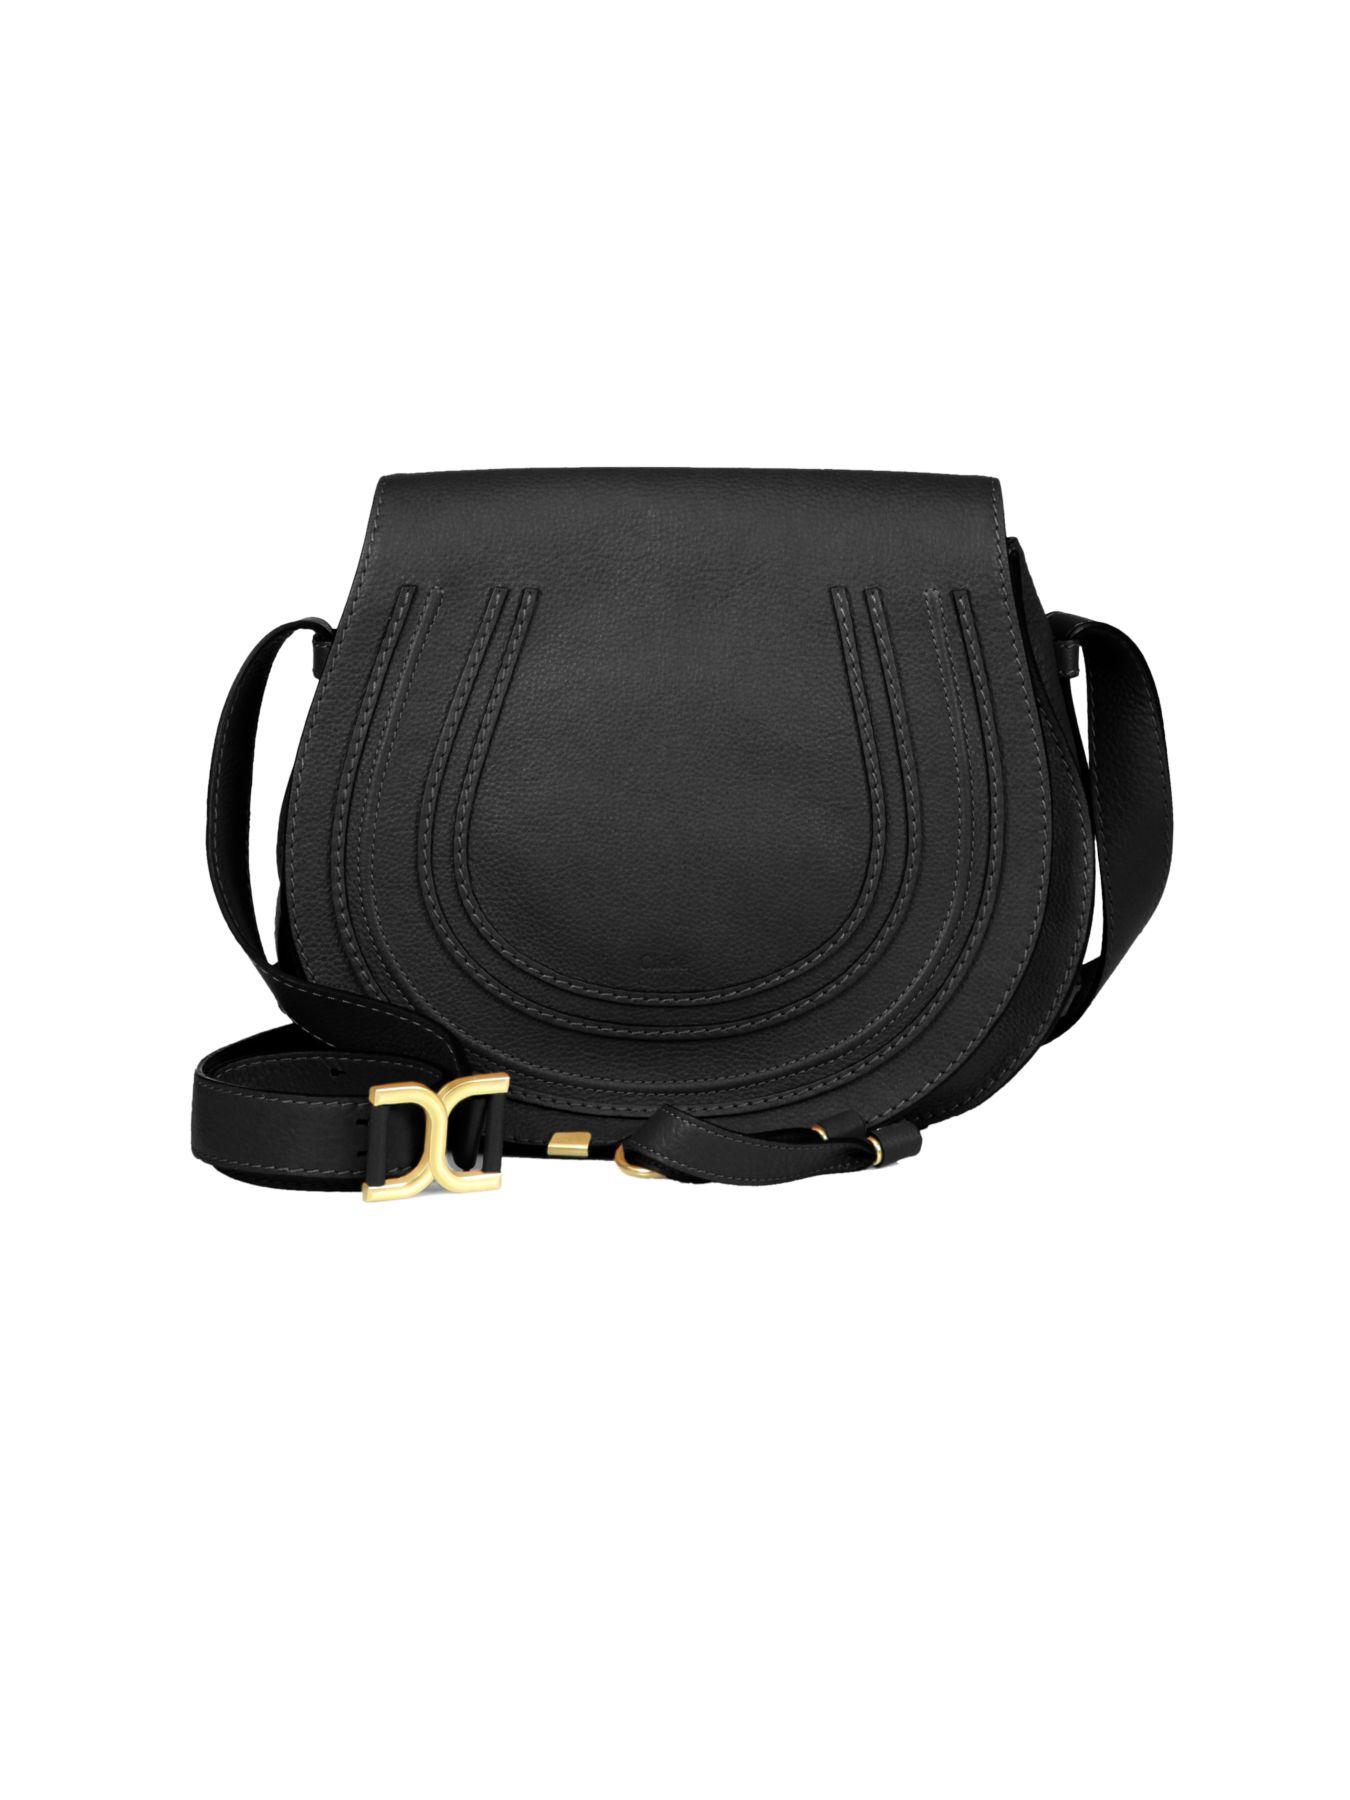 Chloé Marcie Medium Round Crossbody Bag in Black - Lyst